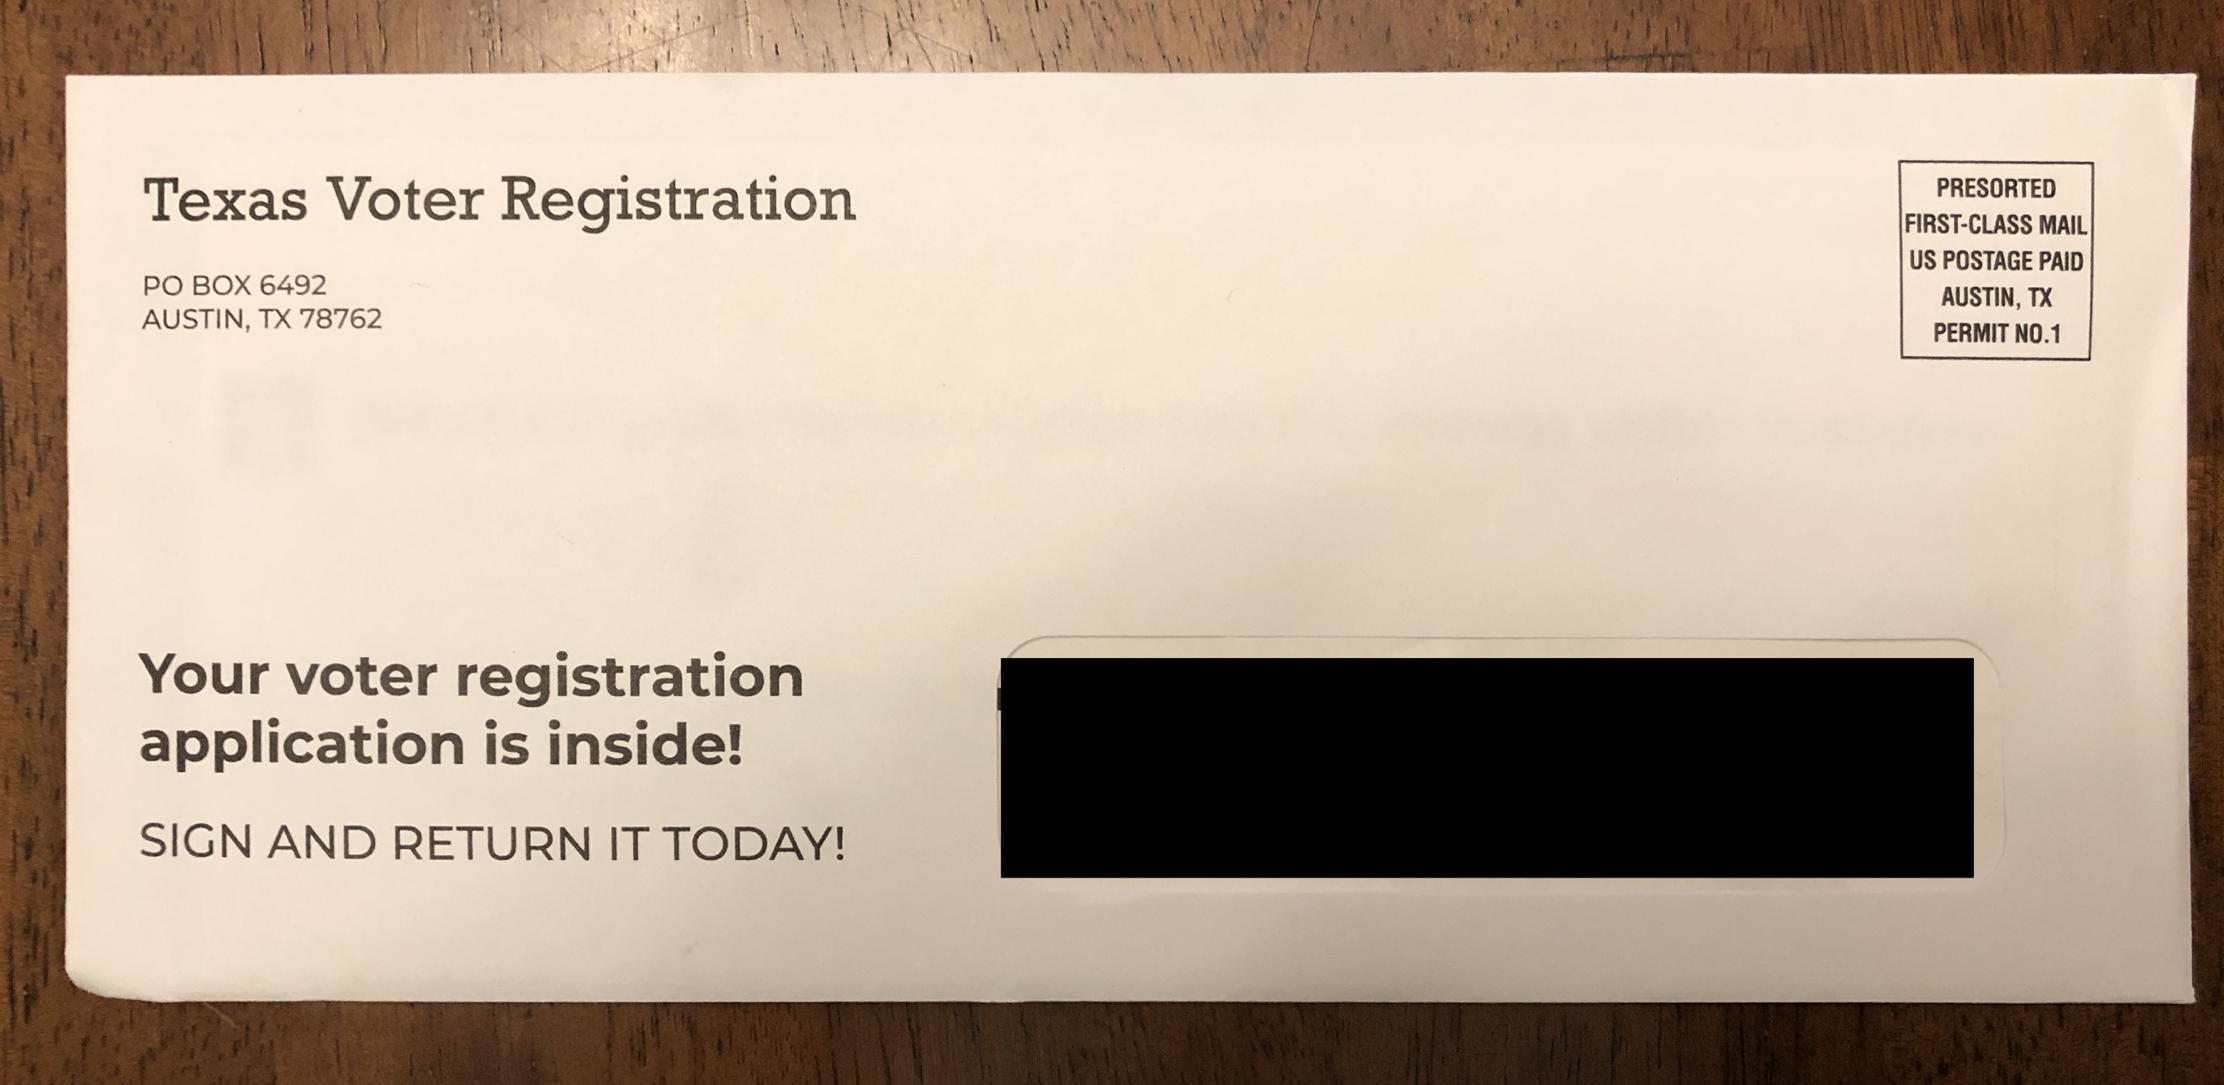 Wrongly delivered: Voter Registration